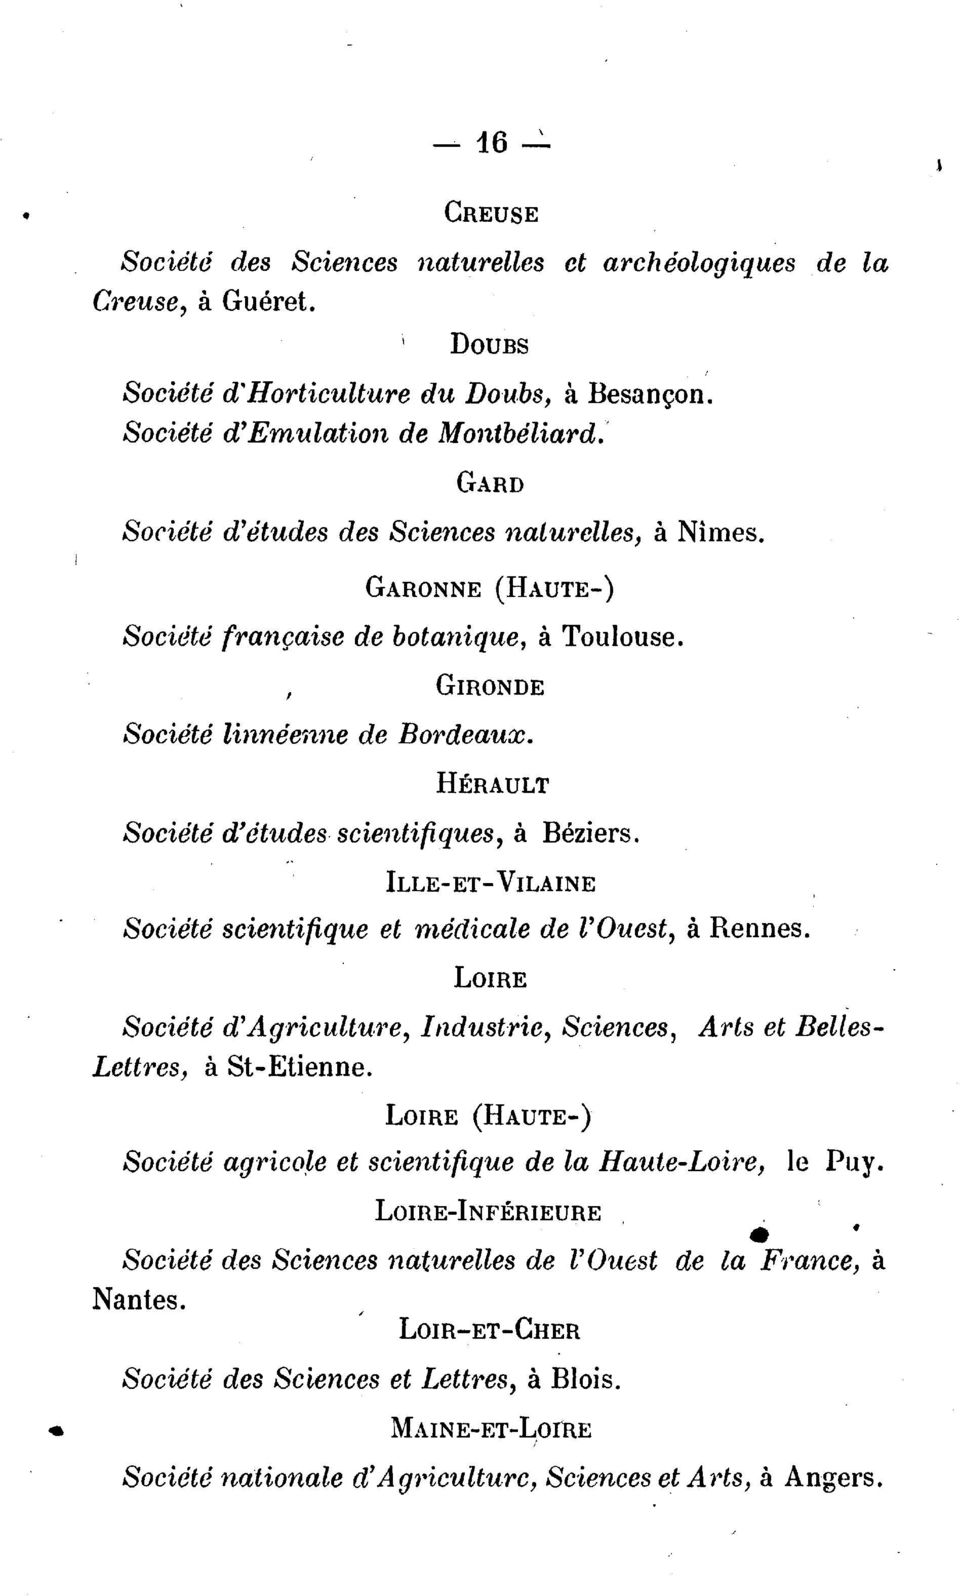 H:ERAULT Societe d'etudes- scientifiques, a Beziers. ILLE-ET-VILAINE Societe scientifique et ntedicale de l'ouest, a Rennes.